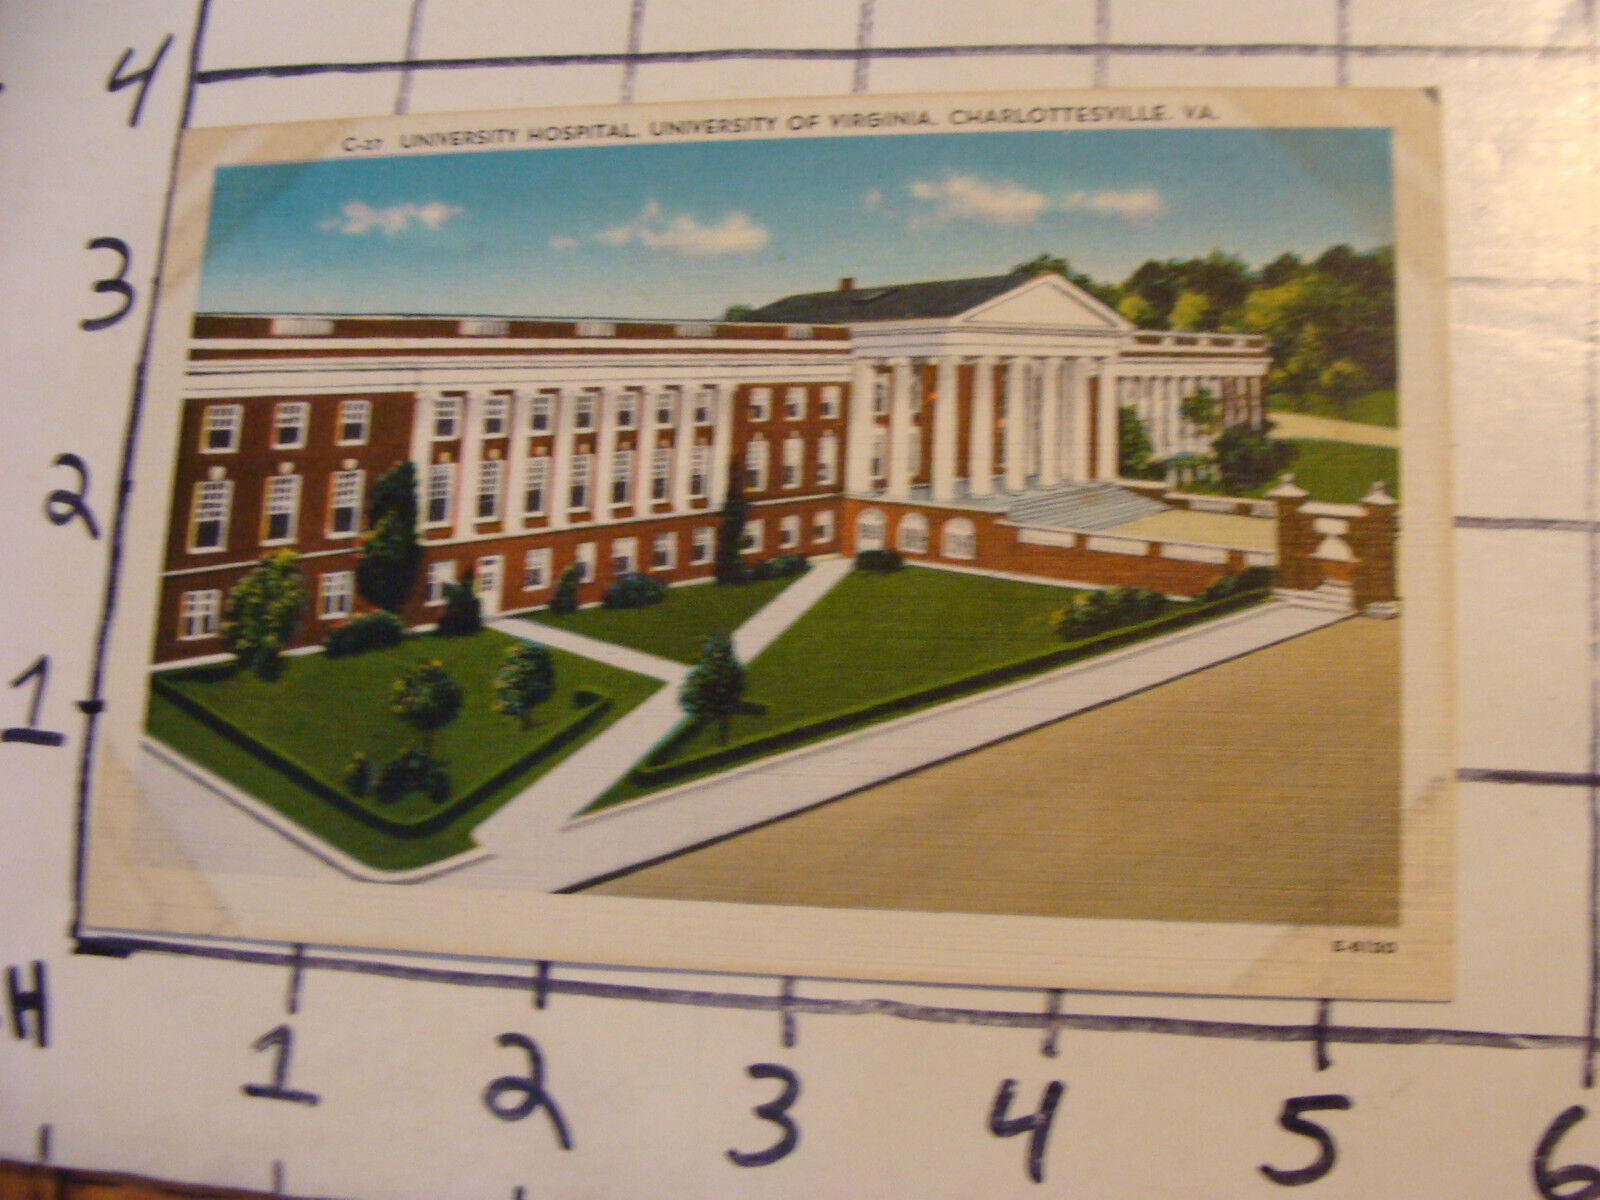  Unused Postcard: VIRGINIA #c27 univ Hospital, univ. of Virginia Charlottesville